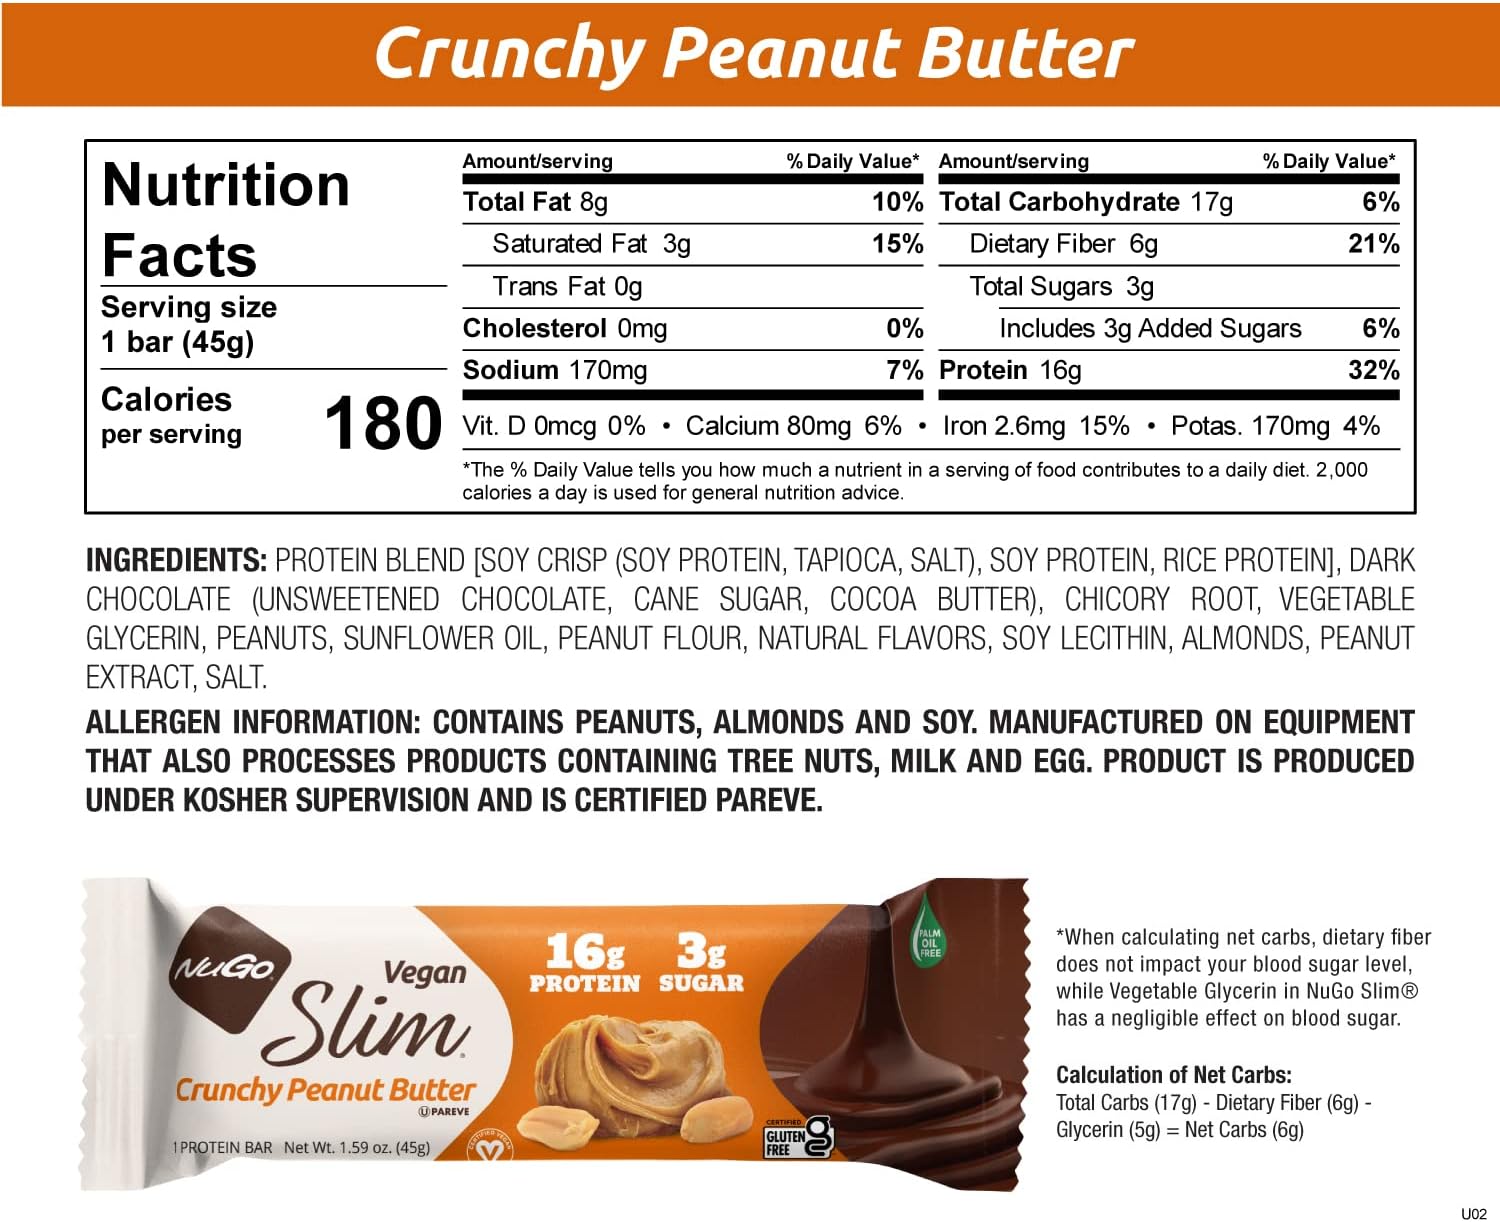 Nugo Slim Dark Chocolate Crunchy Peanut Butter, 16g Vegan Protein, 3g 